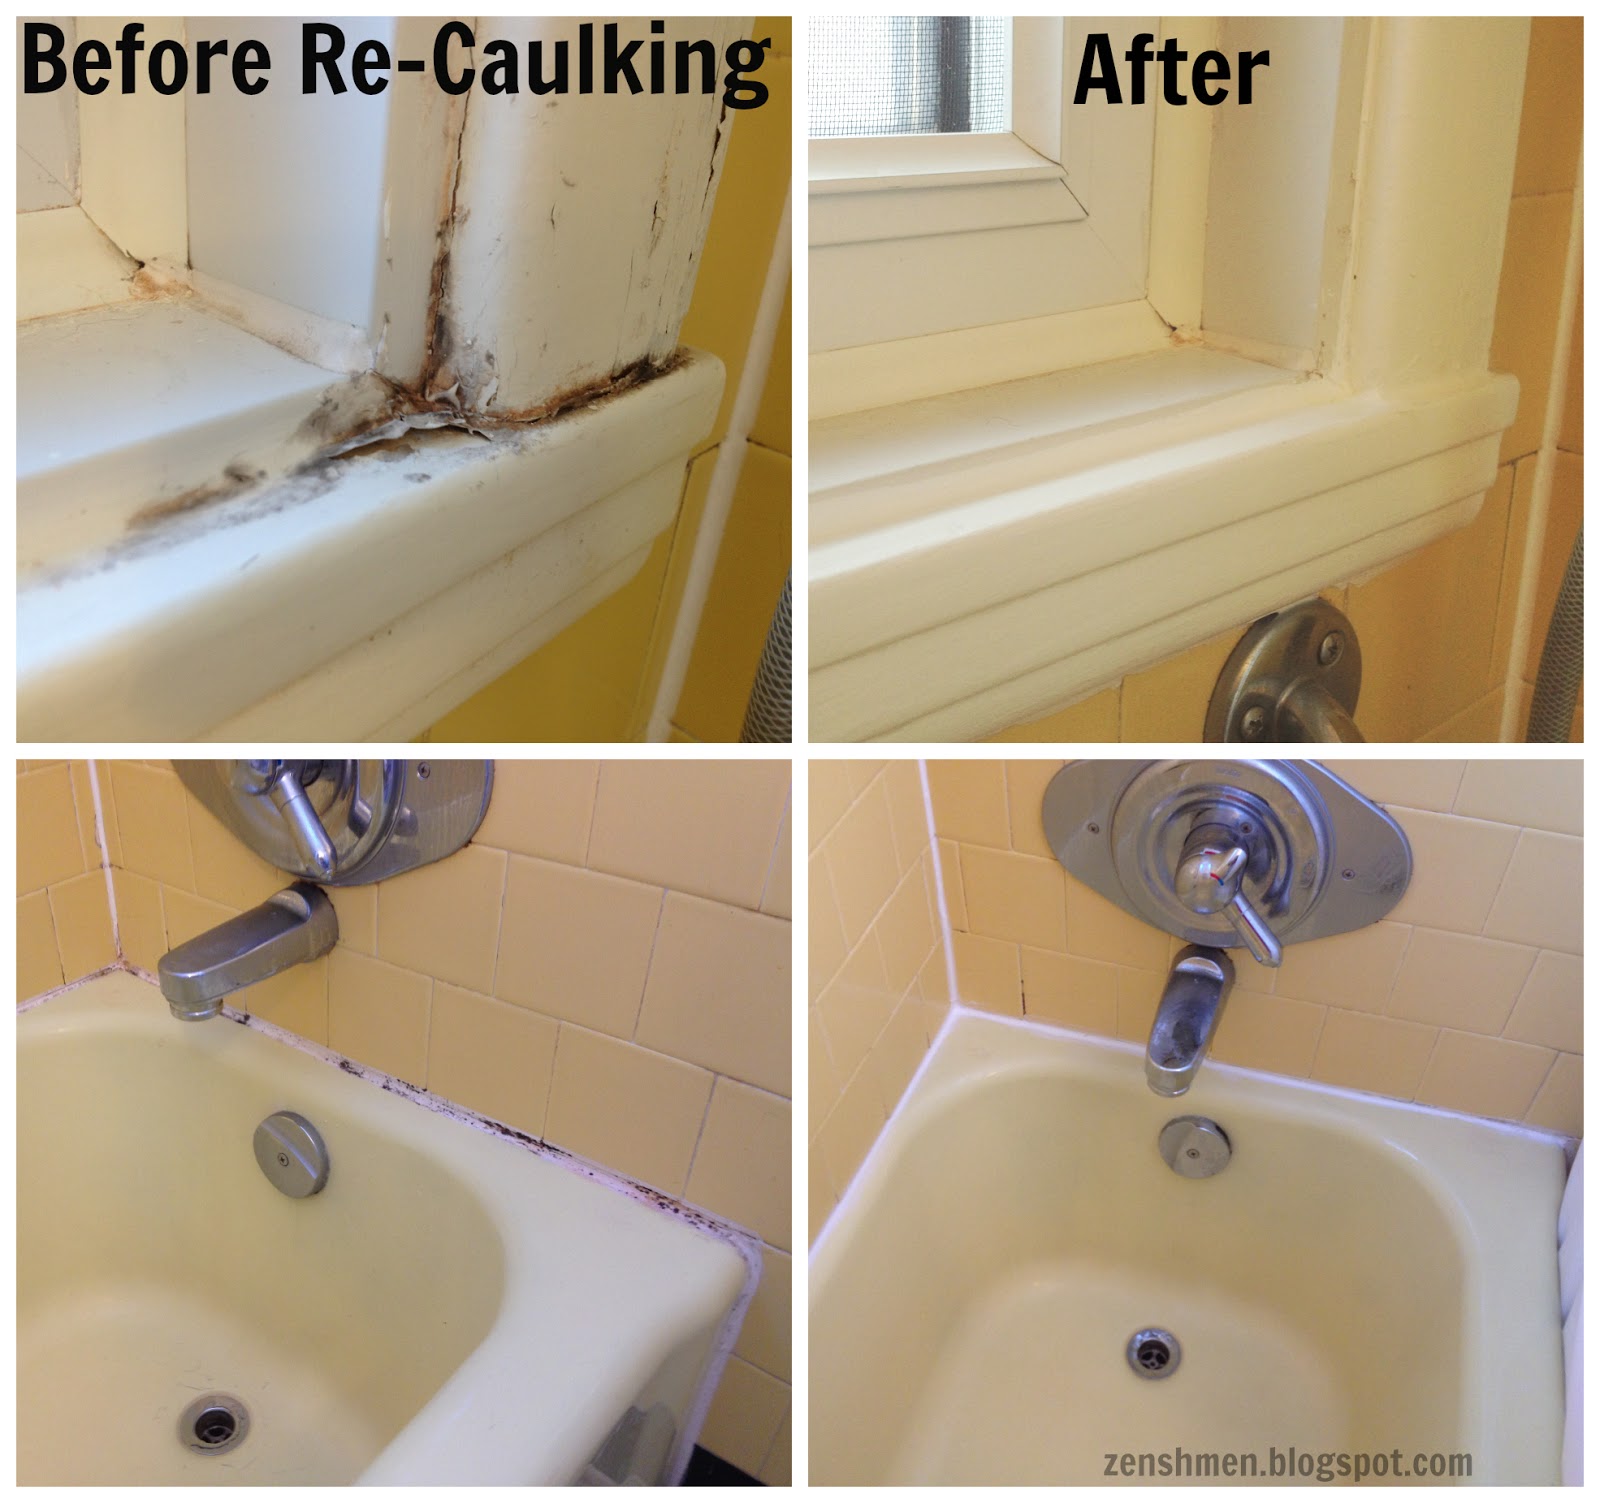 How do you remove old caulk?